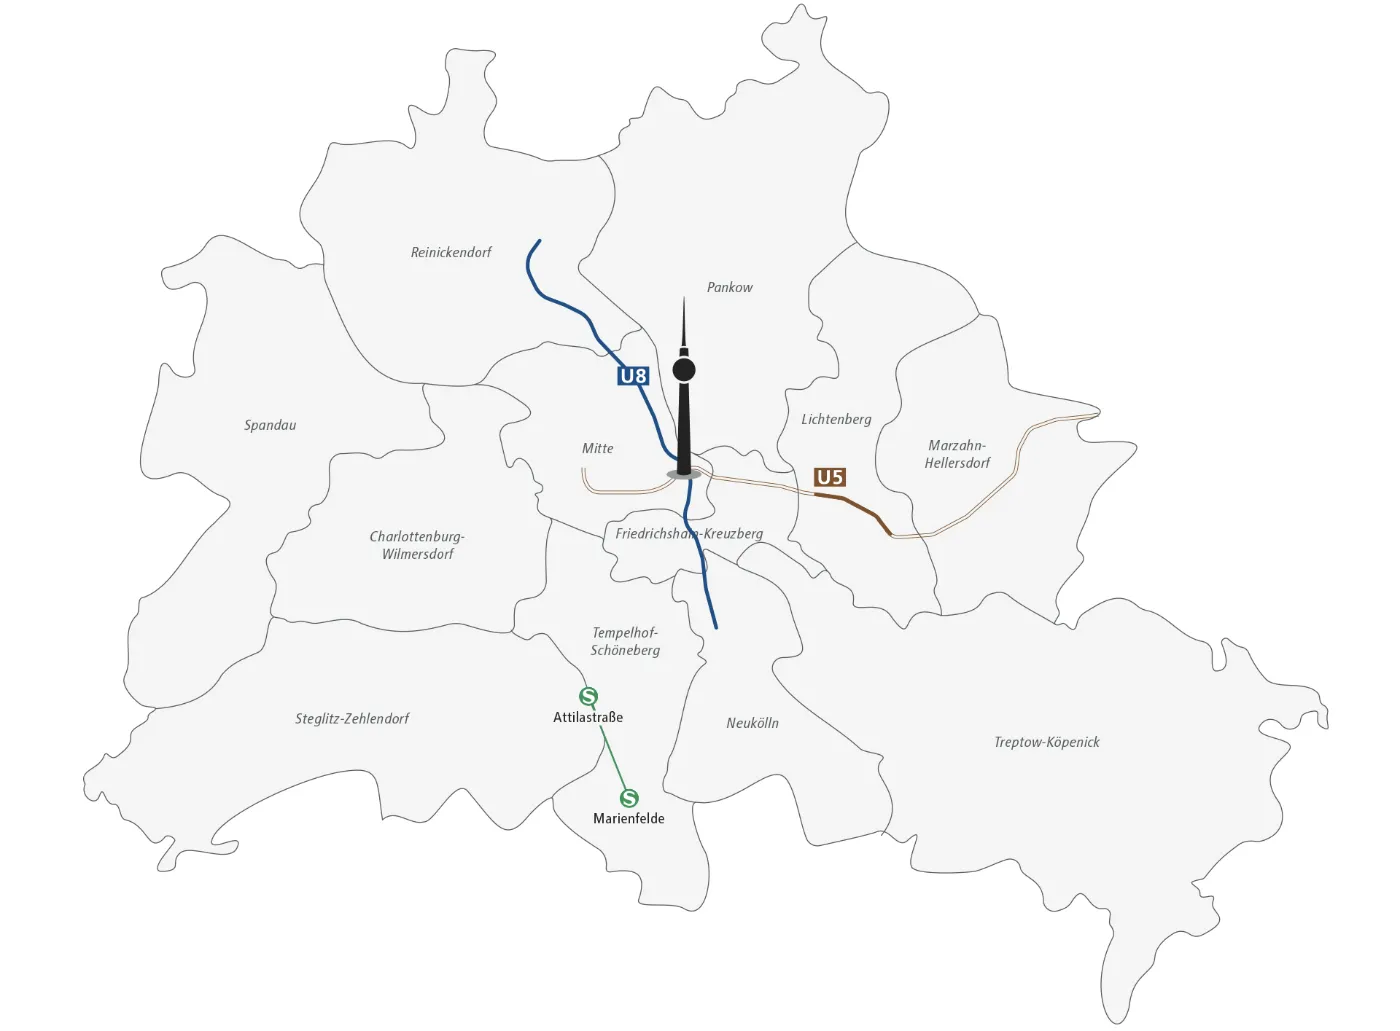 Das Bild zeigt eine Skizze von Berlin und seinen Bezirken. Der Fernsehturm ist zur Orientierung im Bezirk Mitte eingezeichnet. Neben der Unterteilung in die Bezirke, die namentlich aufgeführt sind, ist außerdem das Bediengebiet des BVG Muva entlang der U8, an Teilen der U5 und zwischen S Marienfelde und S Attilastraße eingezeichnet.